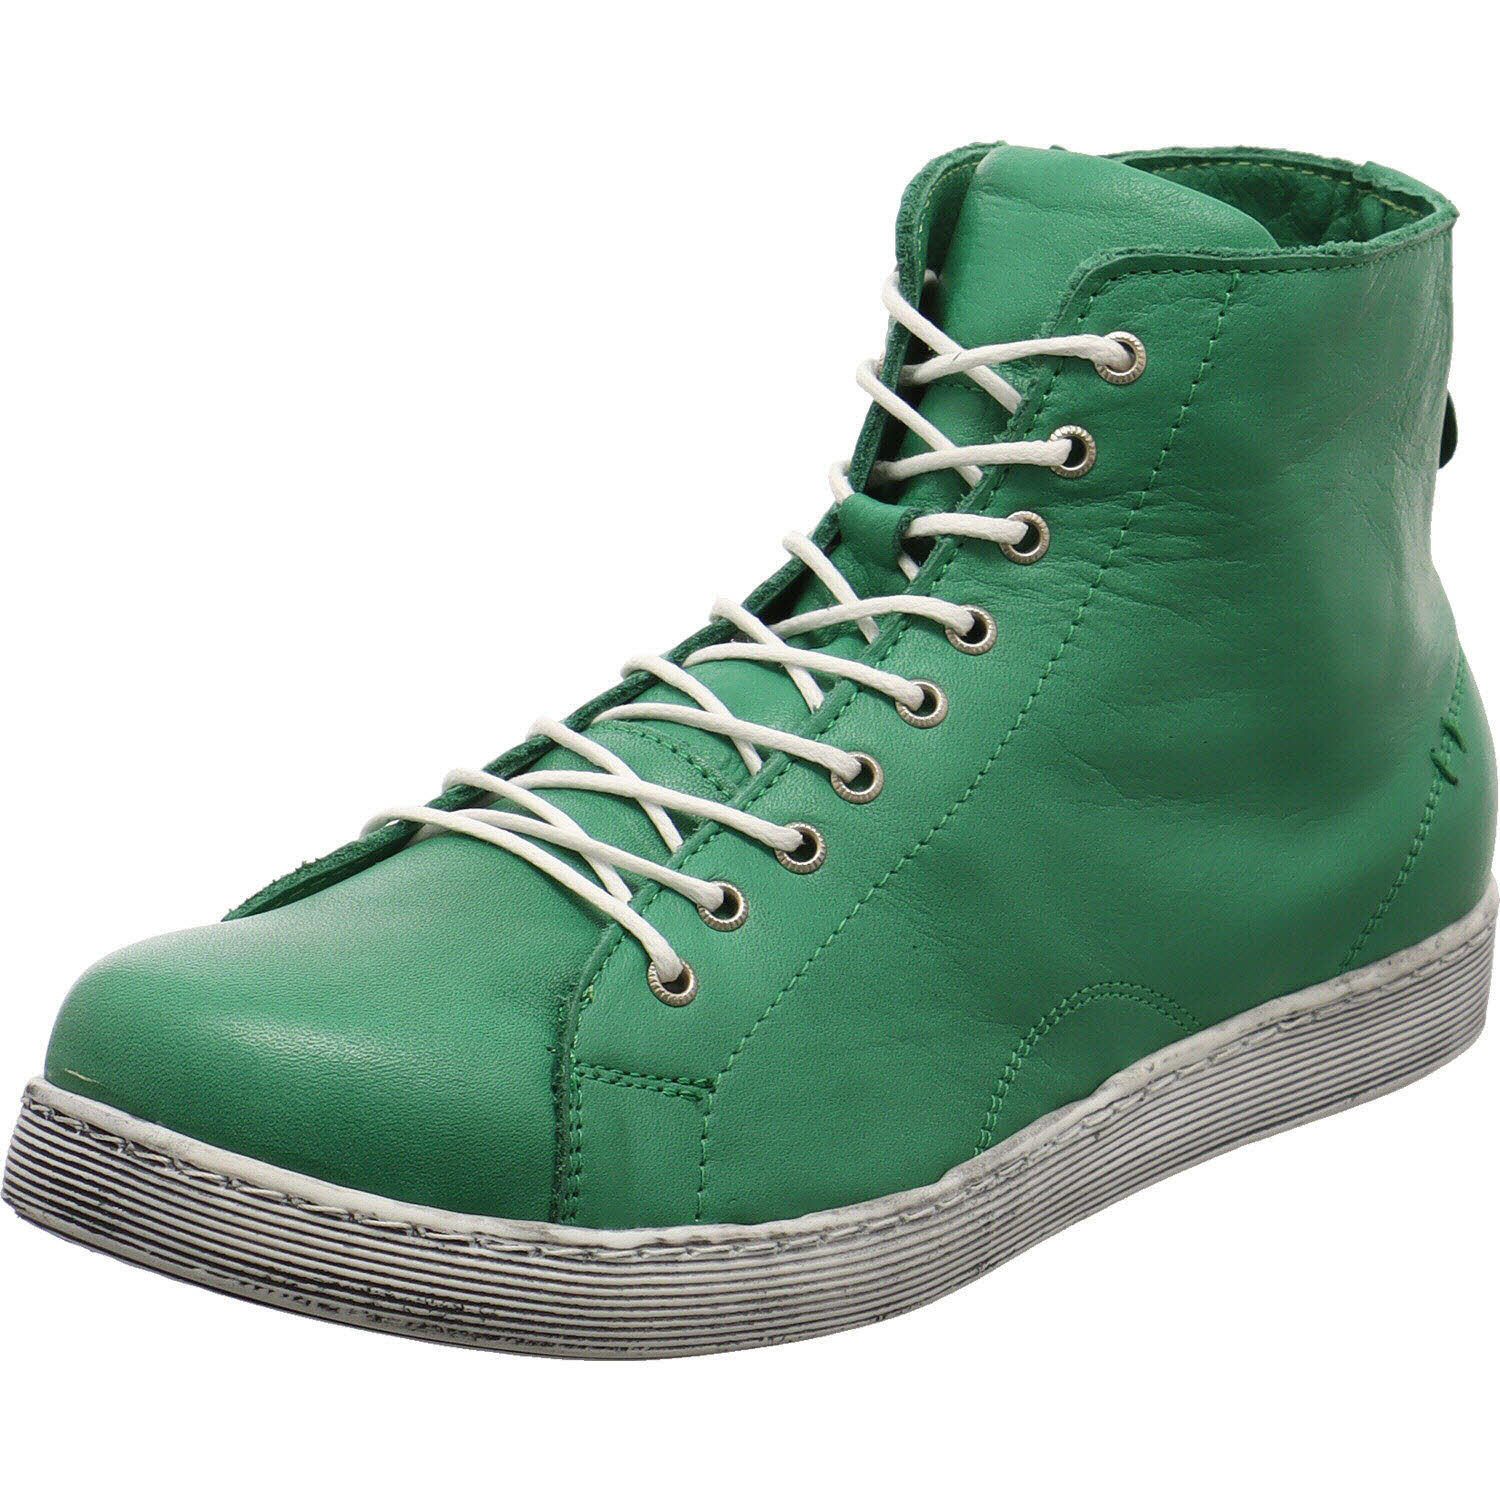 Damen Sneaker high von Andrea Conti auch in Grün erhältlich